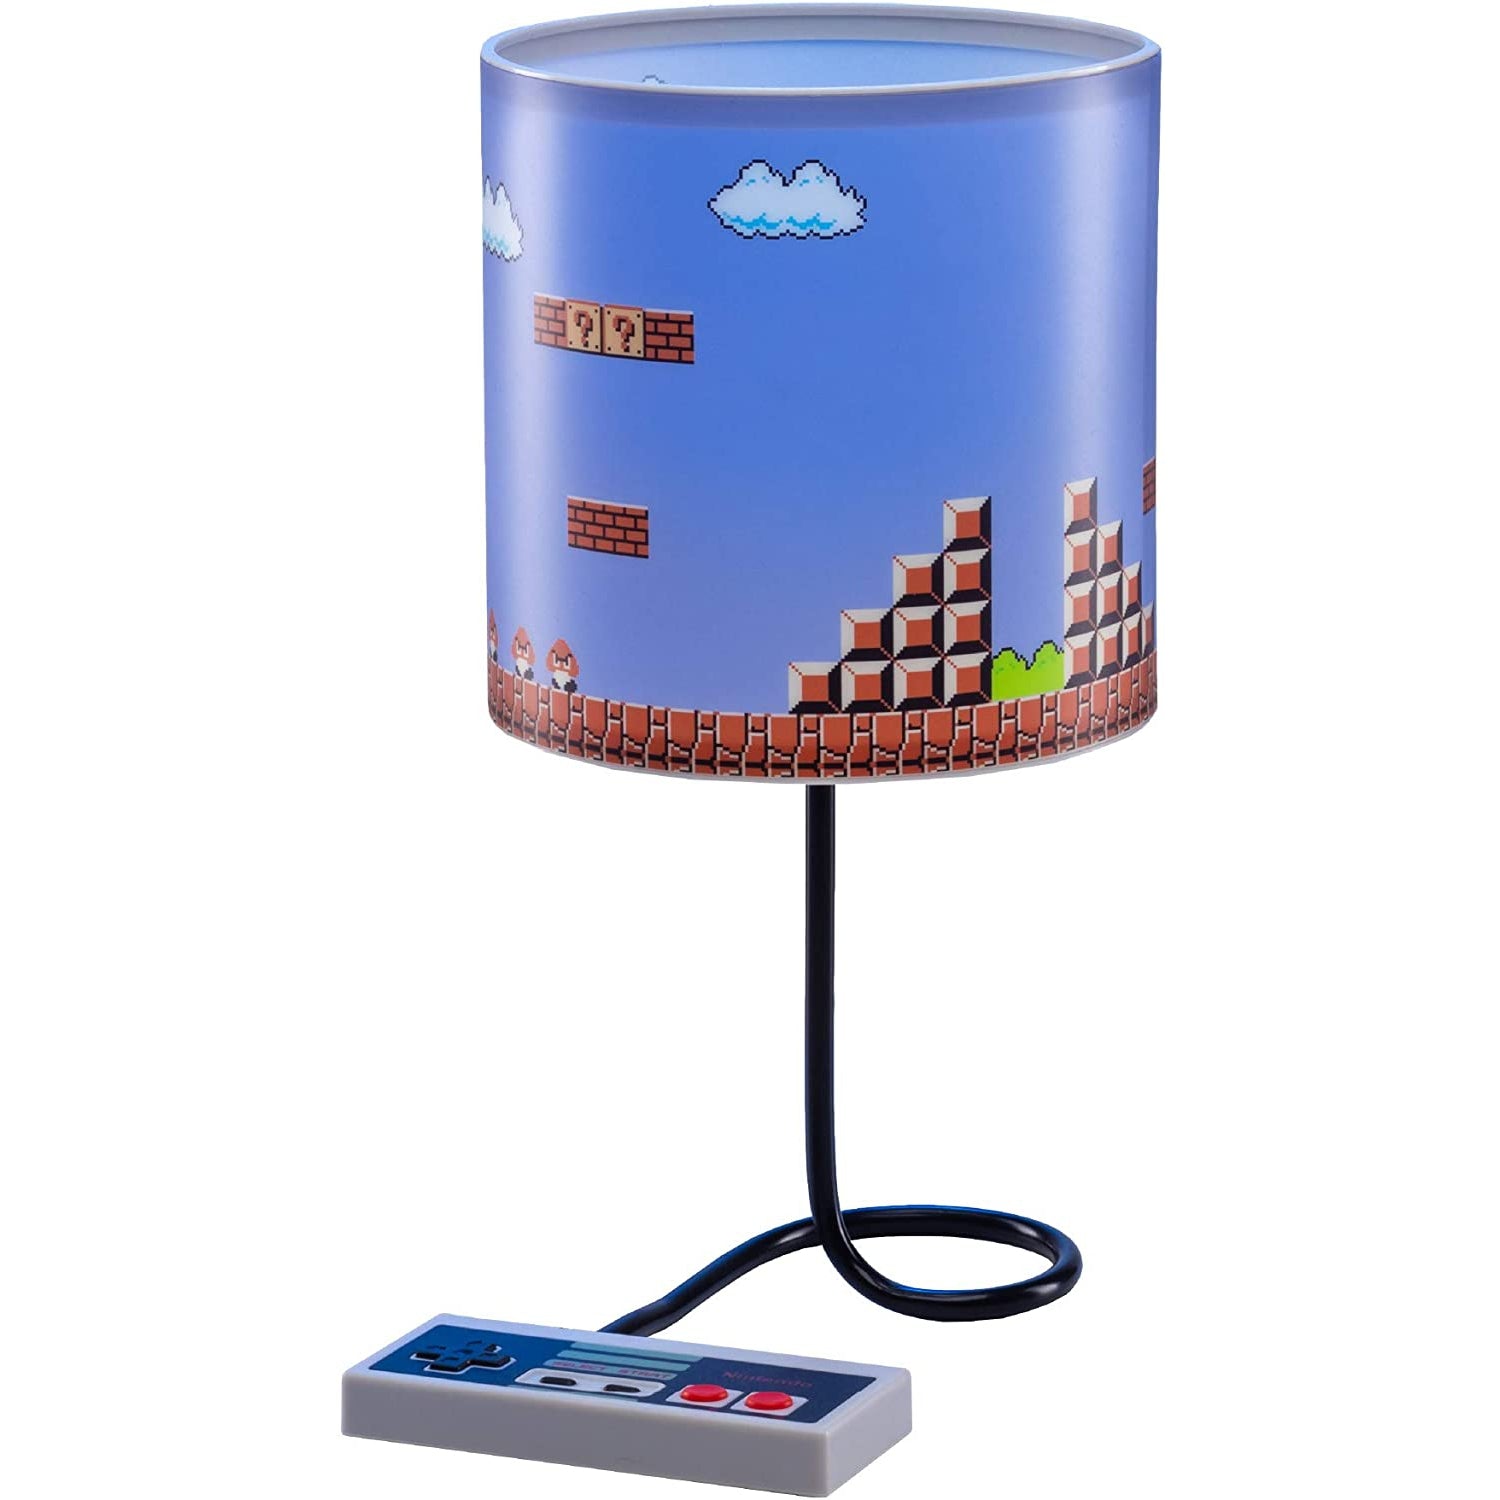 Paladone Super Mario Bros. NES Table Lamp